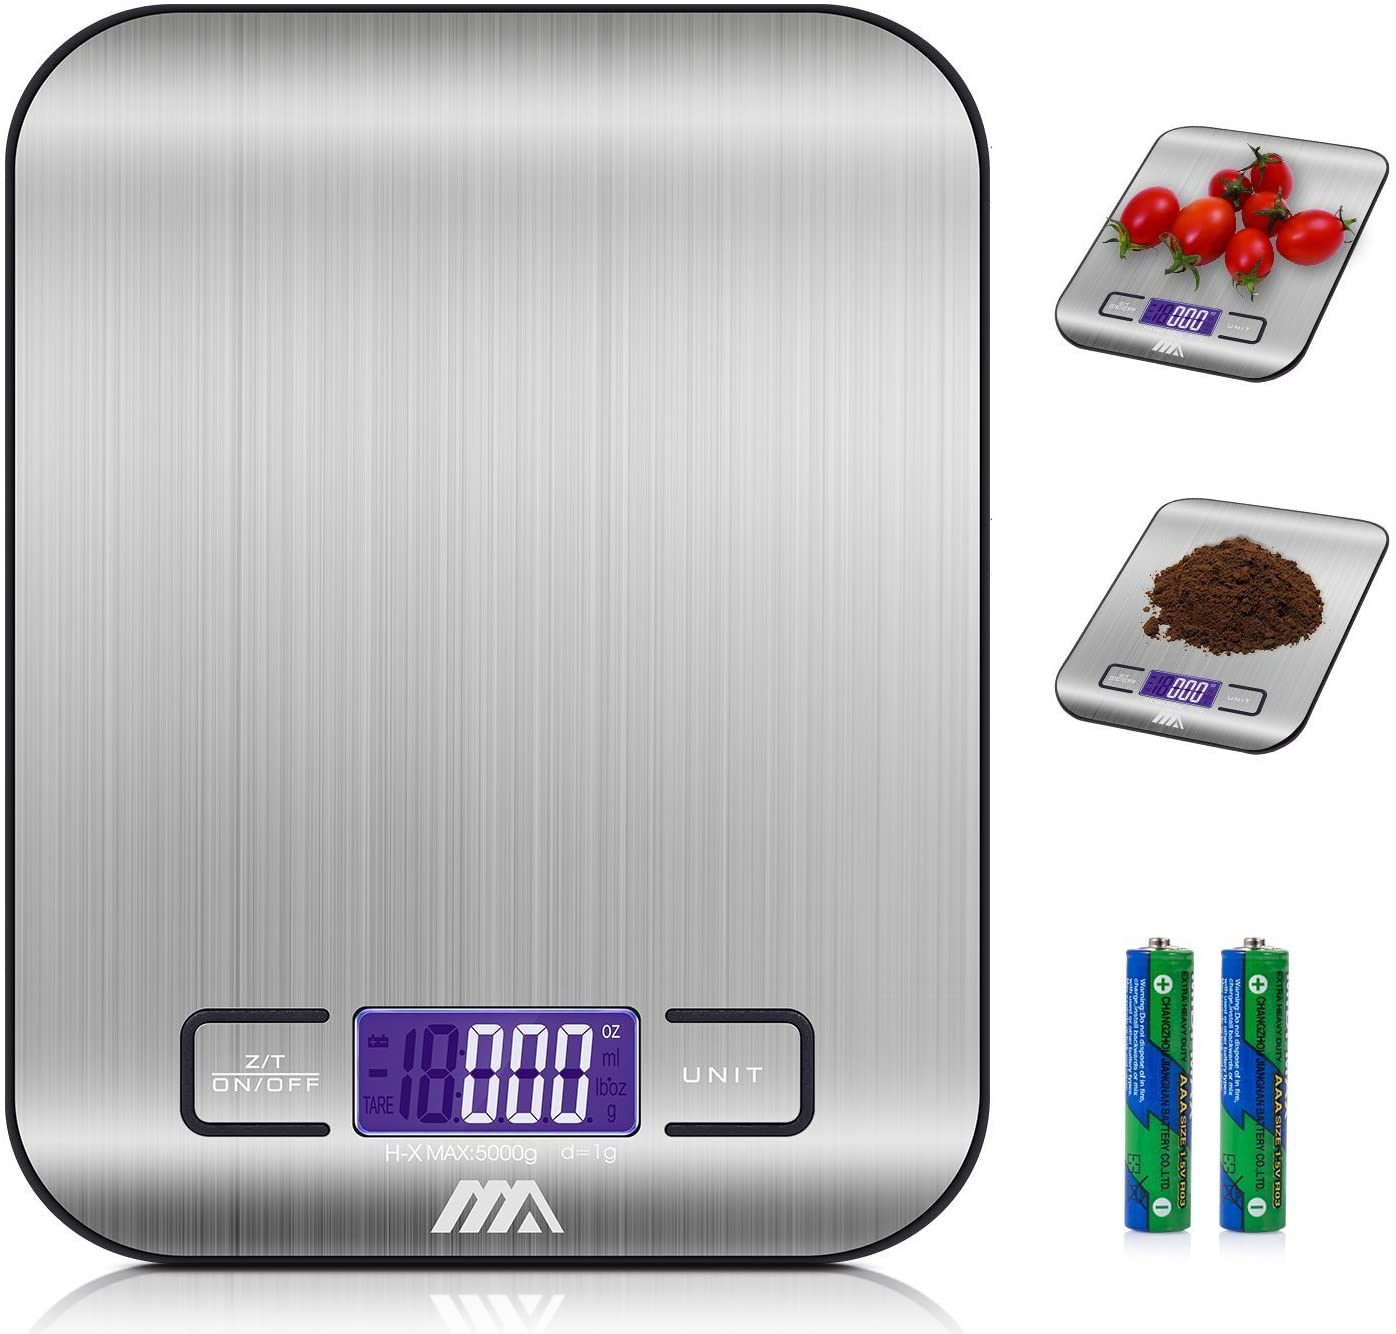 Bilancia digitale da cucina,Adoric Bilancia digitale elettronica da cucina con Alimenti 5kg/11lb e Acciaio Inossidabile(Argento)